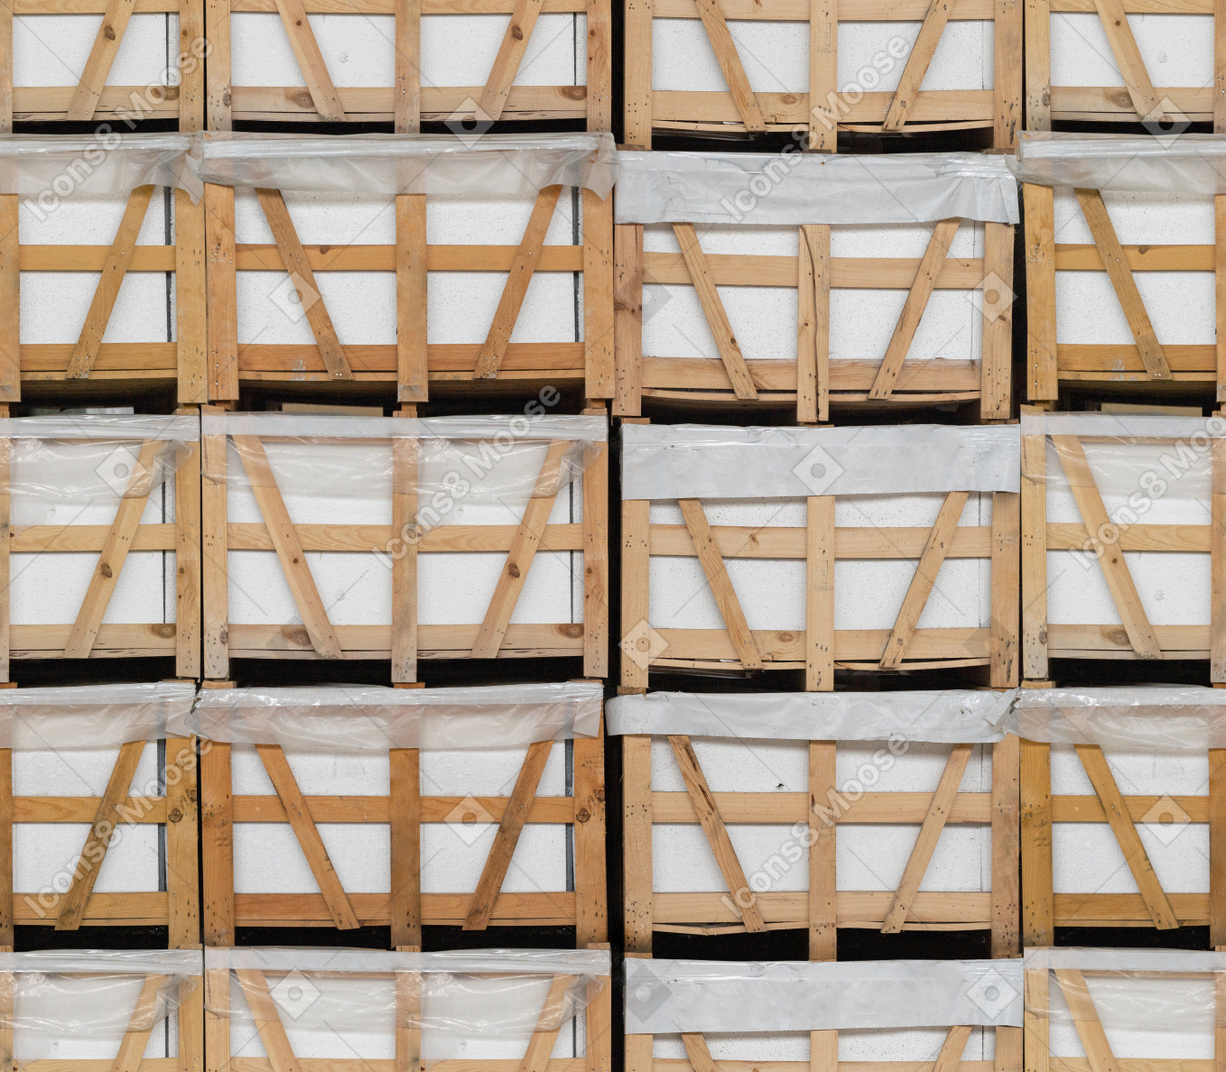 Ladrillos blancos almacenados en contenedores de madera